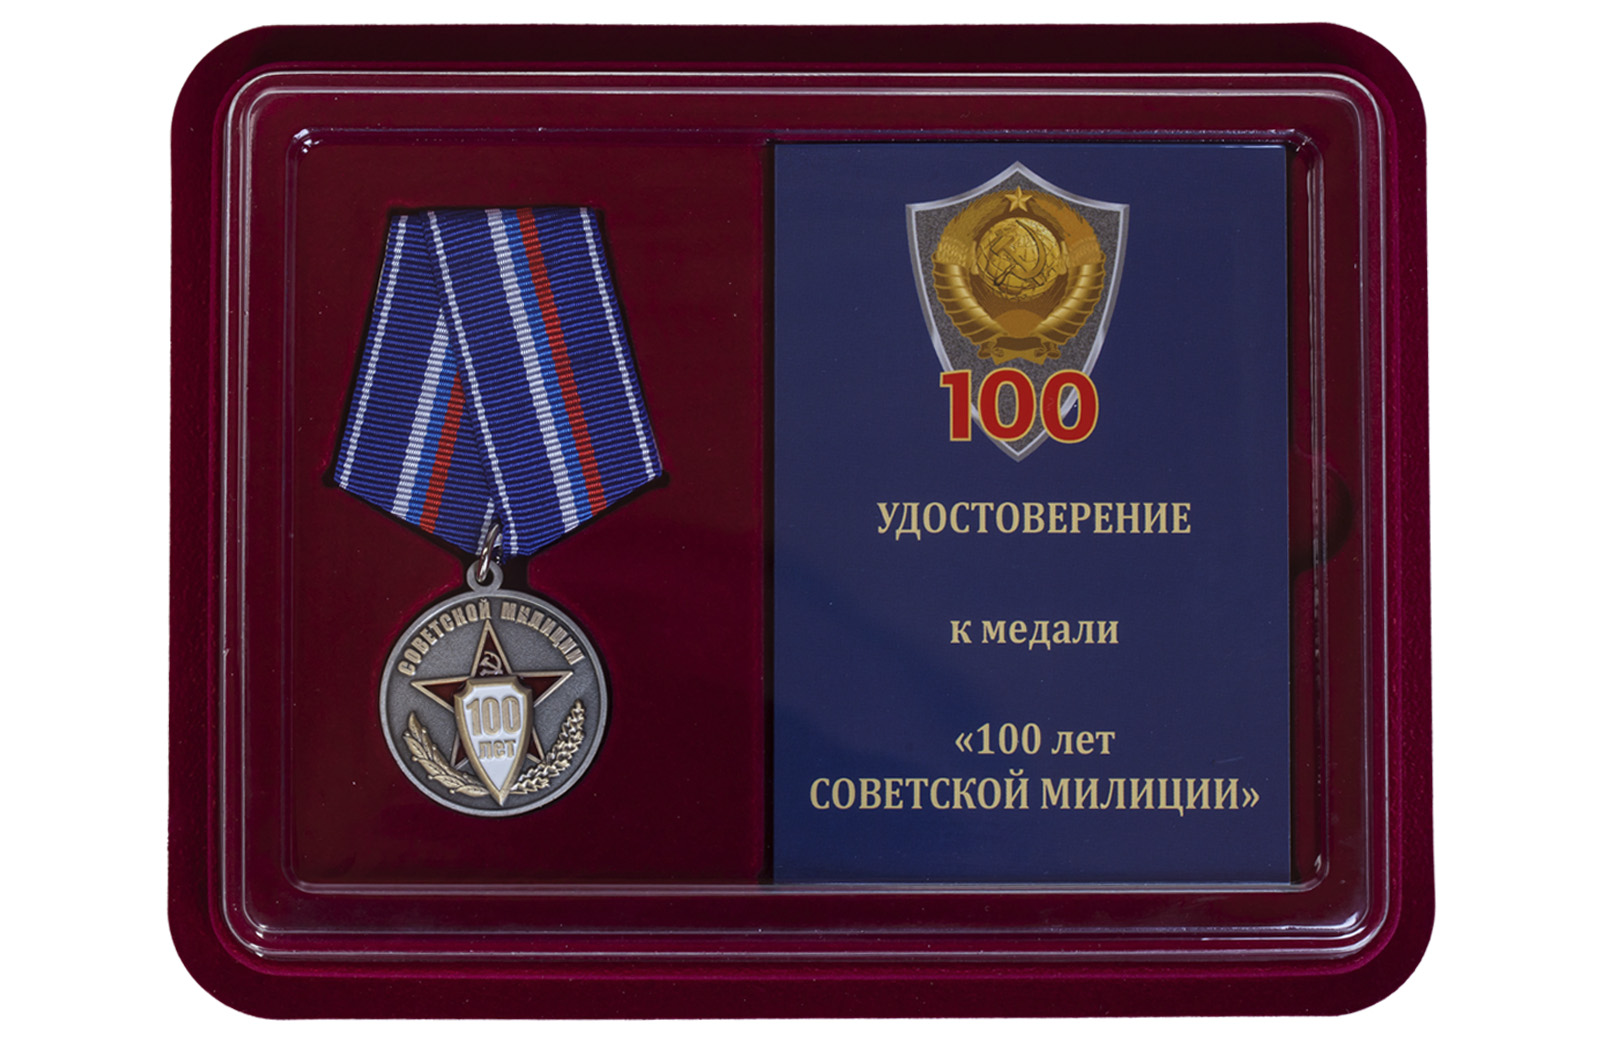 Купить юбилейную медаль 100 лет Советской милиции по низкой цене